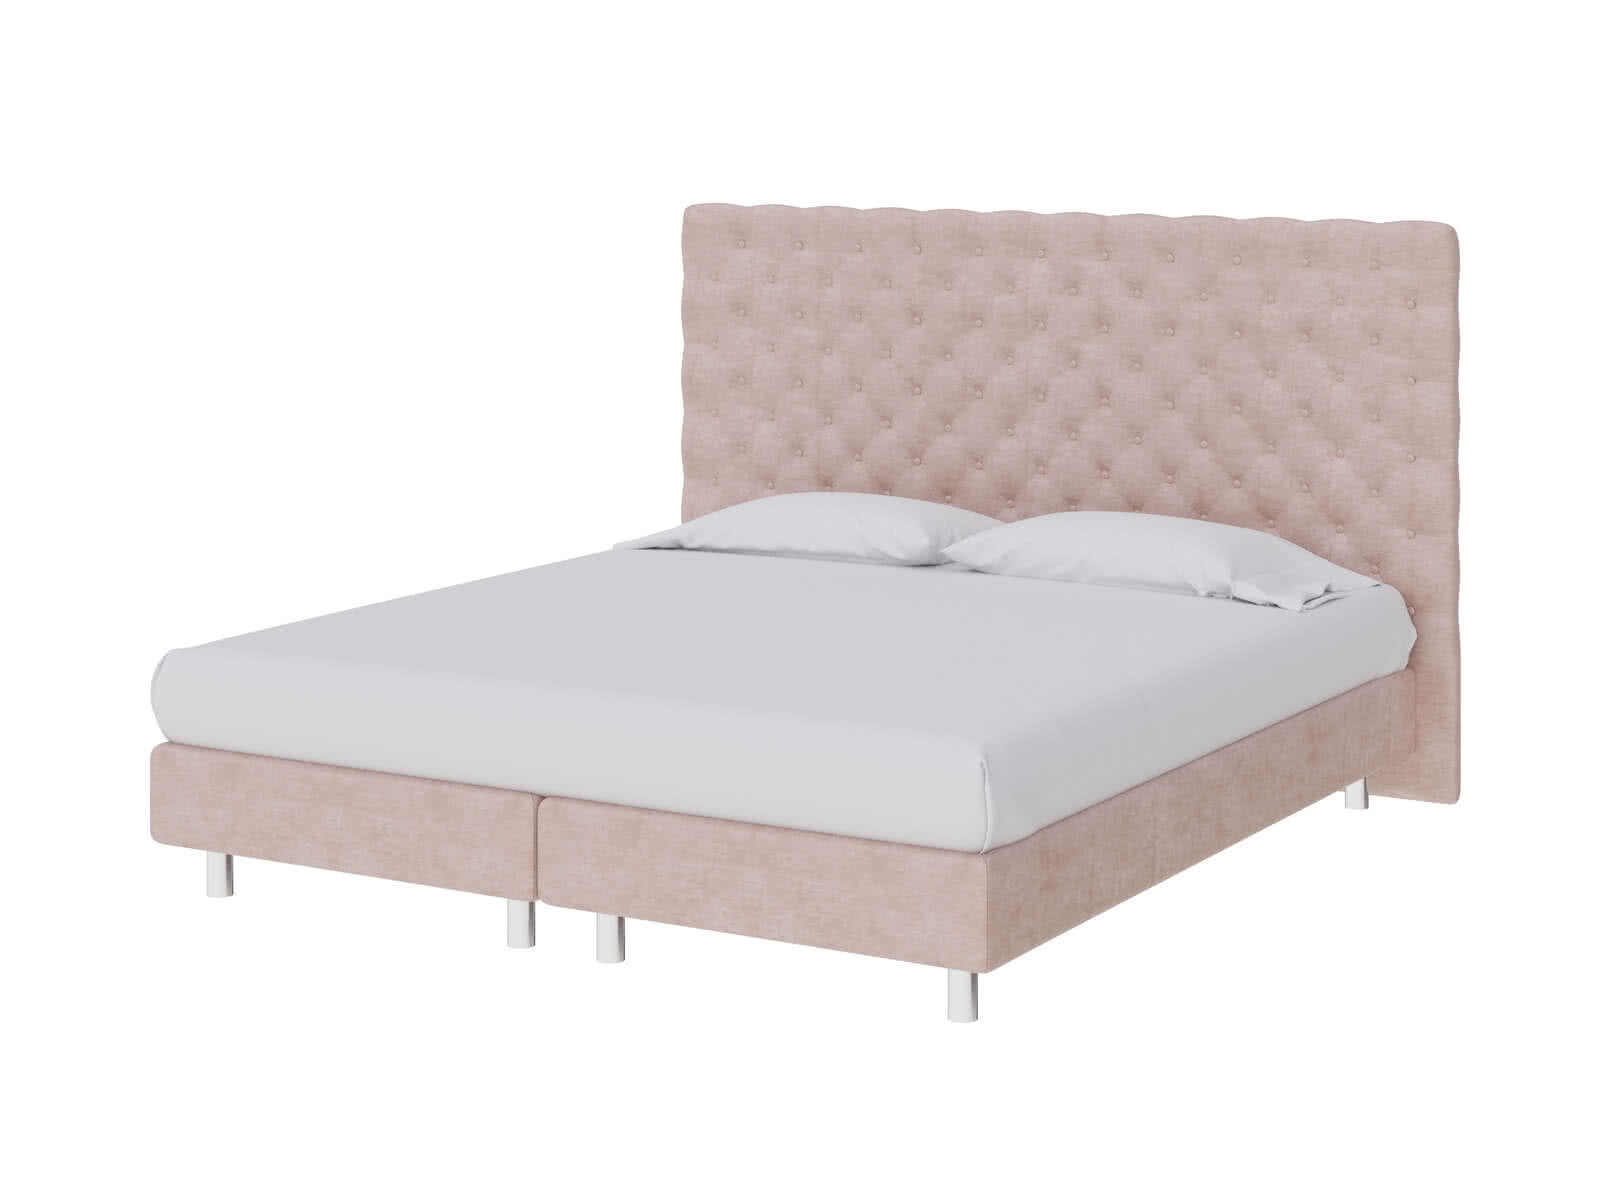 Кровать ProSon Europe Paris Elite 200 х 200 см Лофти Тауп от производителя — цены фабрики, доставка